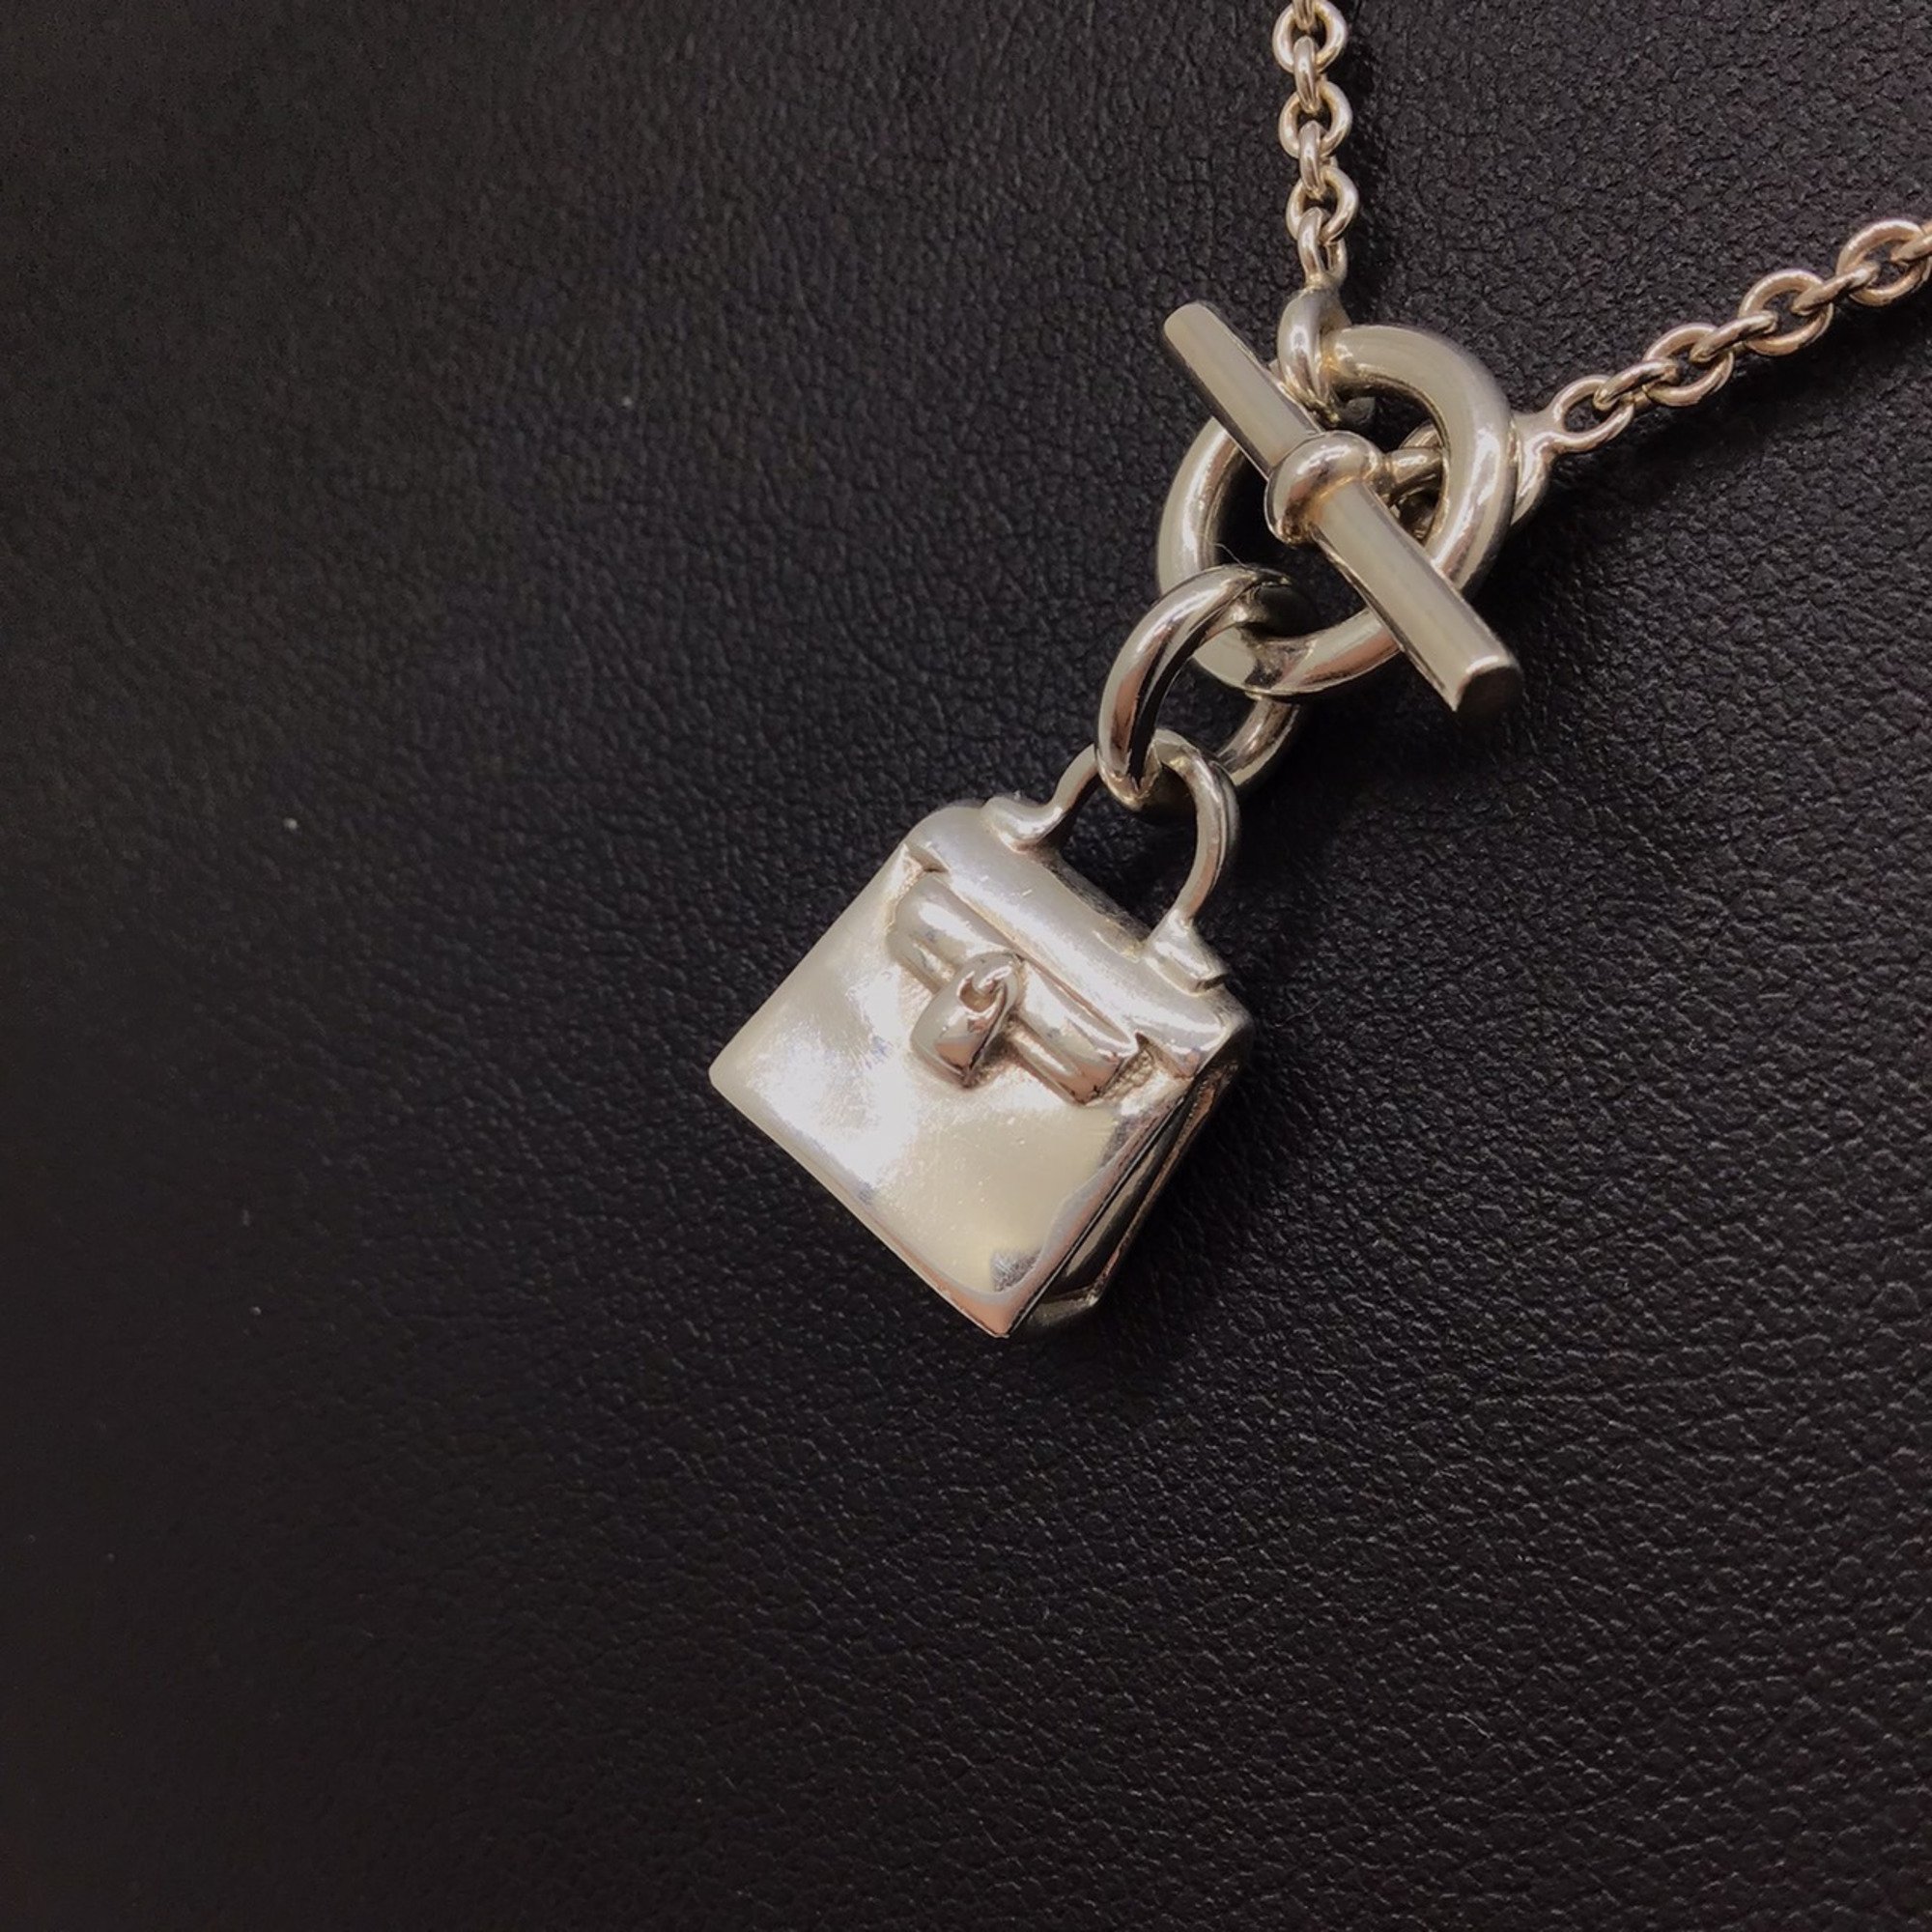 HERMES Amulet Kelly Necklace Silver Ag925 SV925 Pendant Neck Fashion Accessories Women Men Unisex